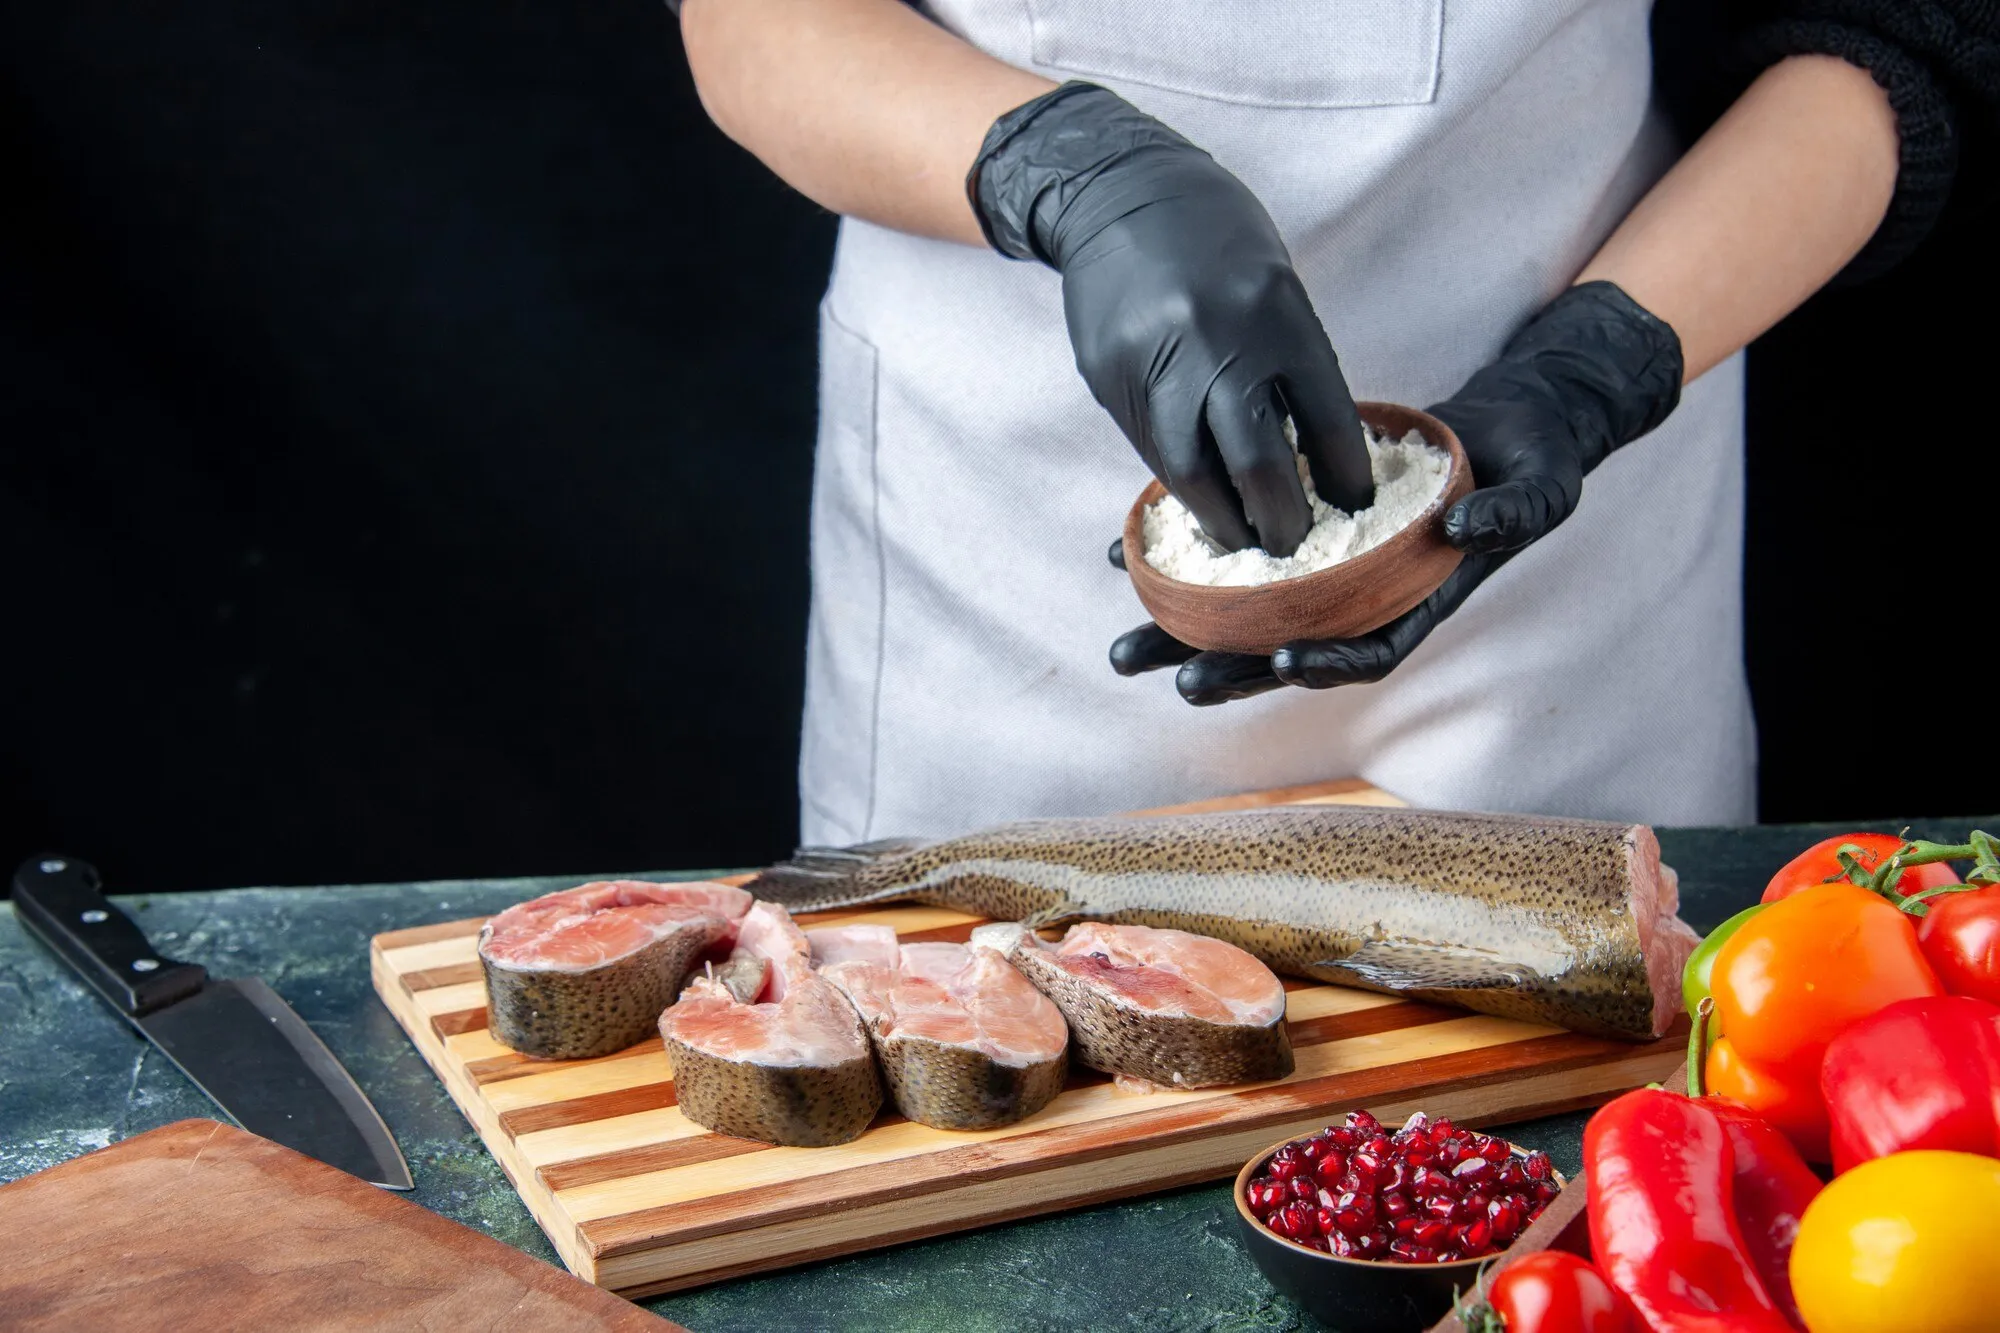 Hvordan tilbereder man fisk ordentligt og lækkert?